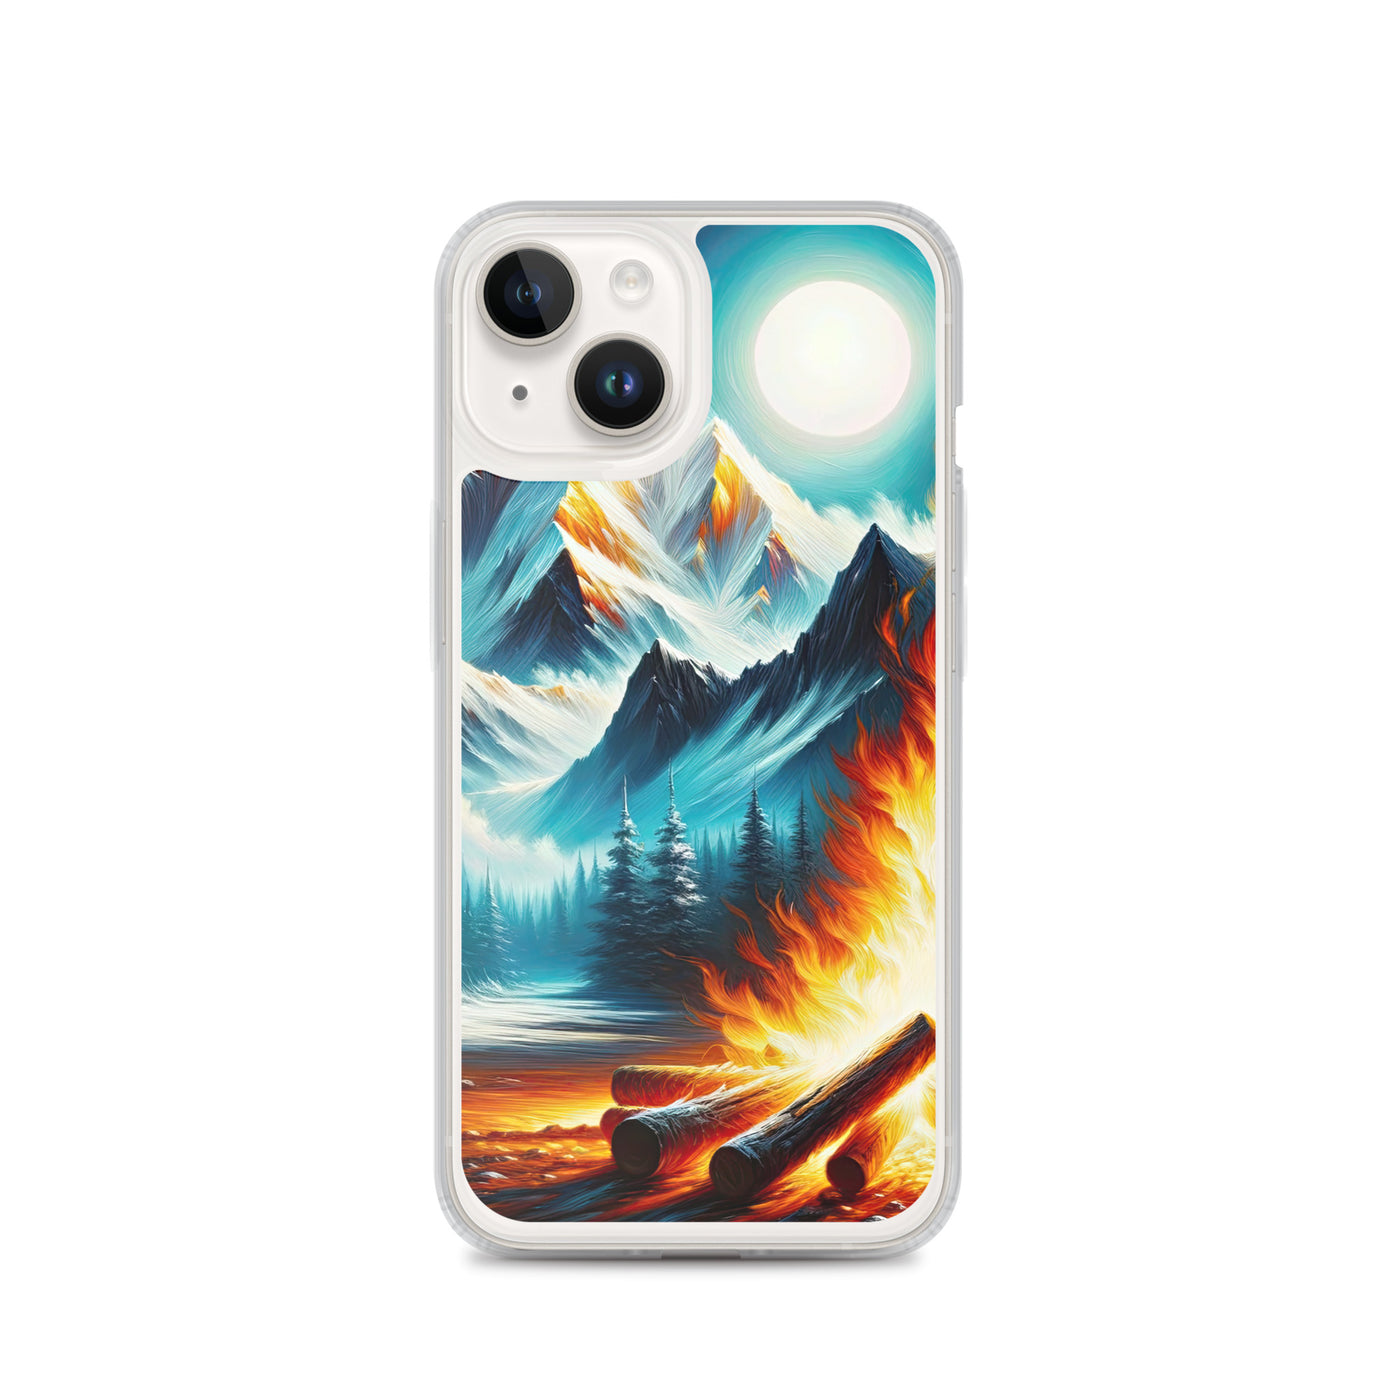 Ölgemälde von Feuer und Eis: Lagerfeuer und Alpen im Kontrast, warme Flammen - iPhone Schutzhülle (durchsichtig) camping xxx yyy zzz iPhone 14